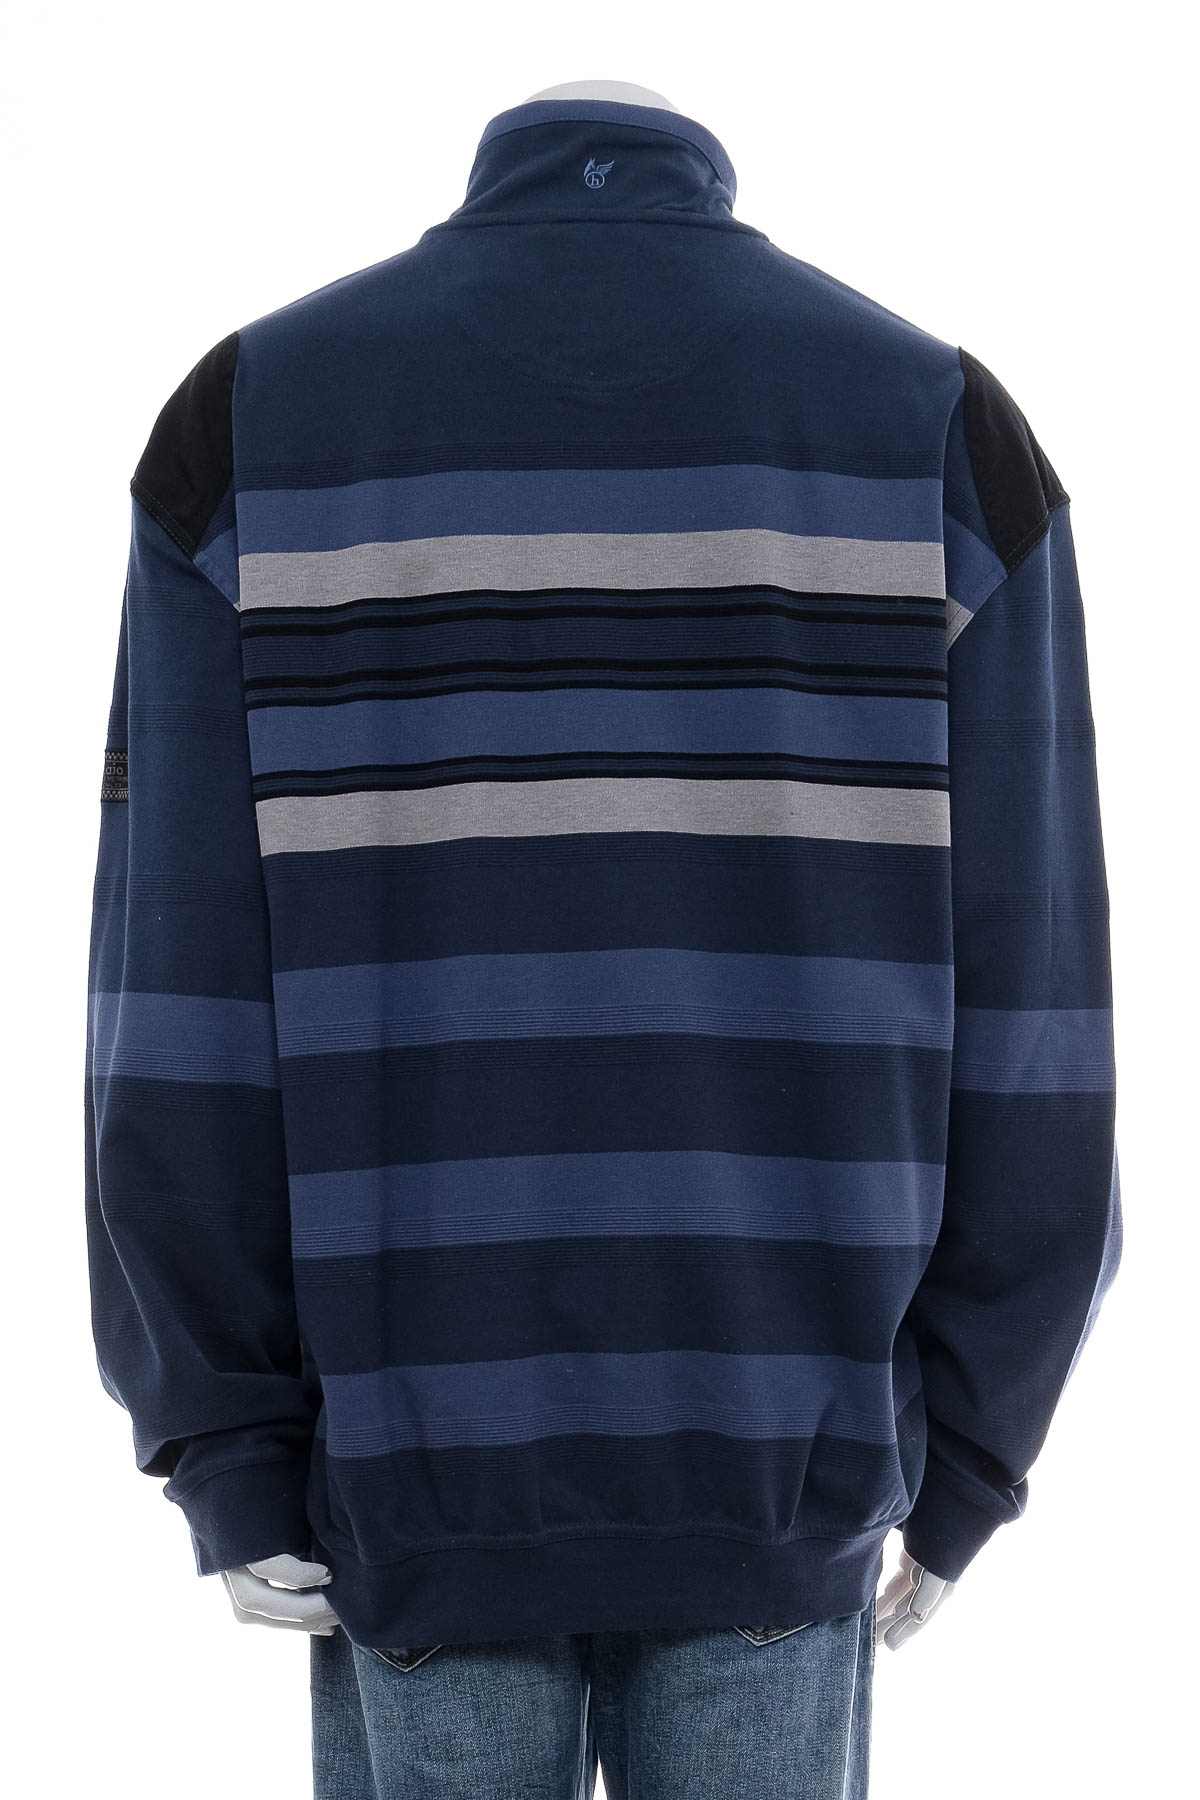 Men's sweater - Hajo - 1